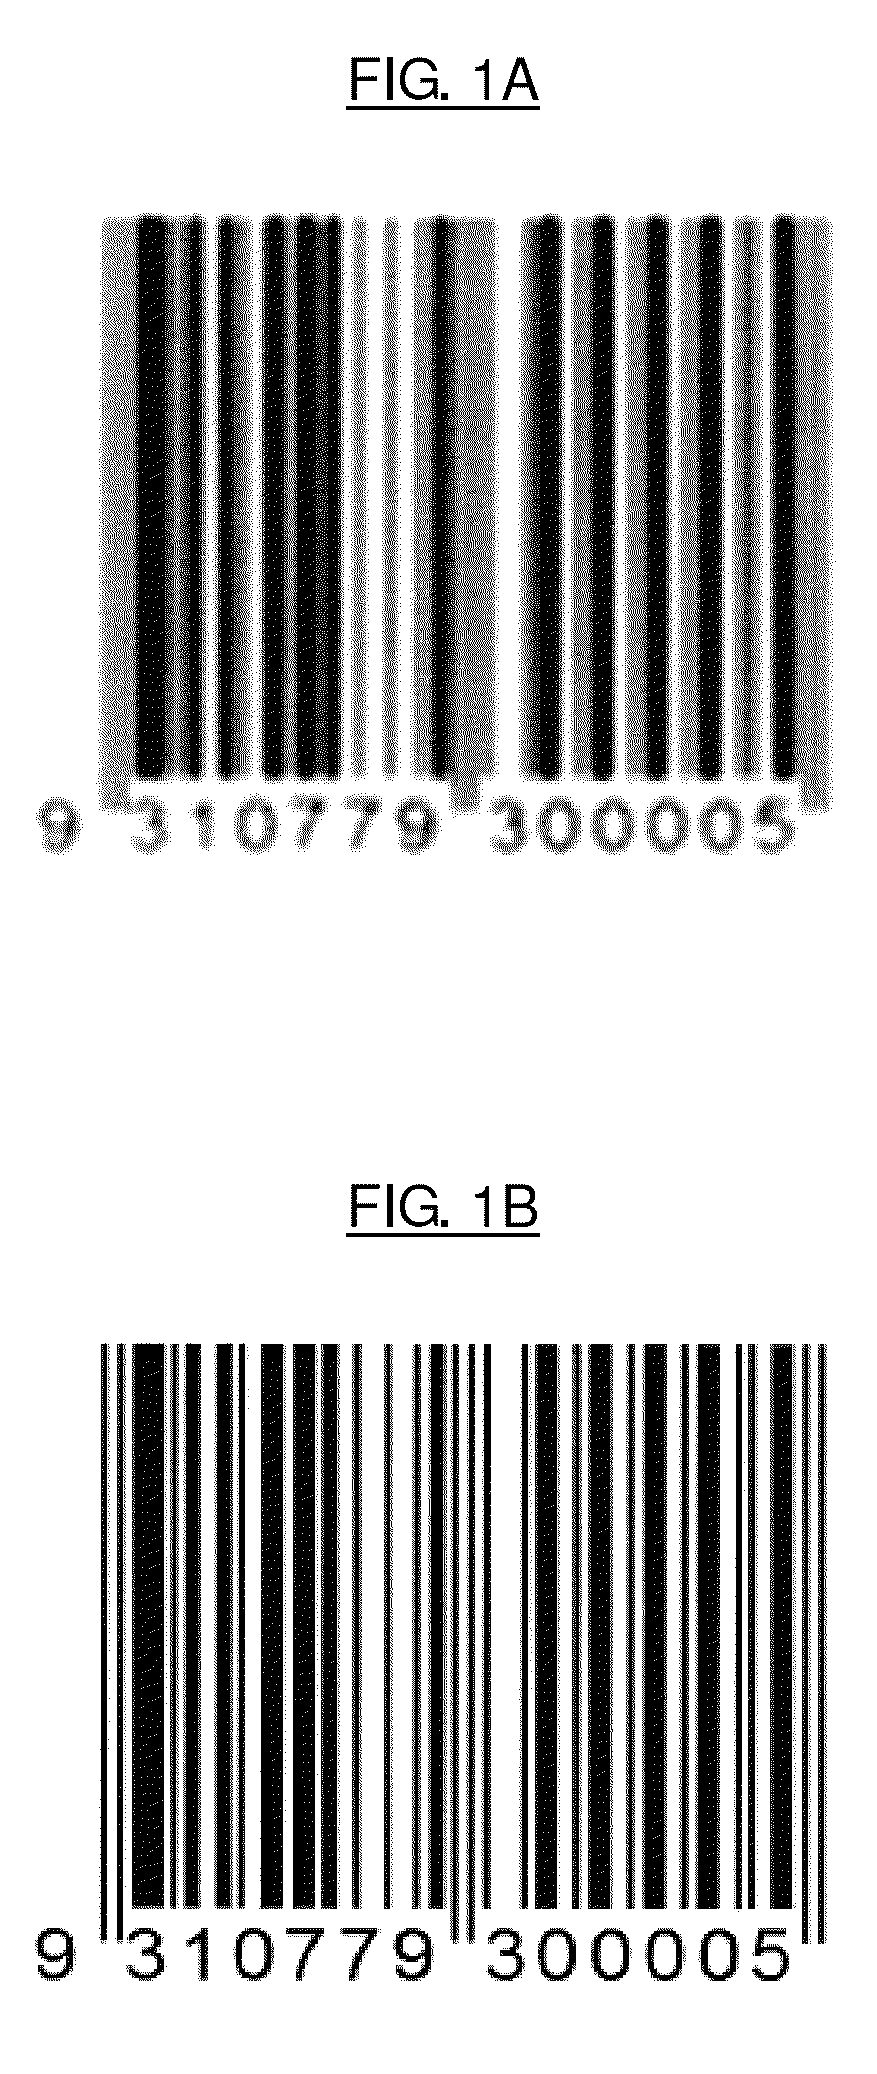 Method for restoration of blurred barcode images